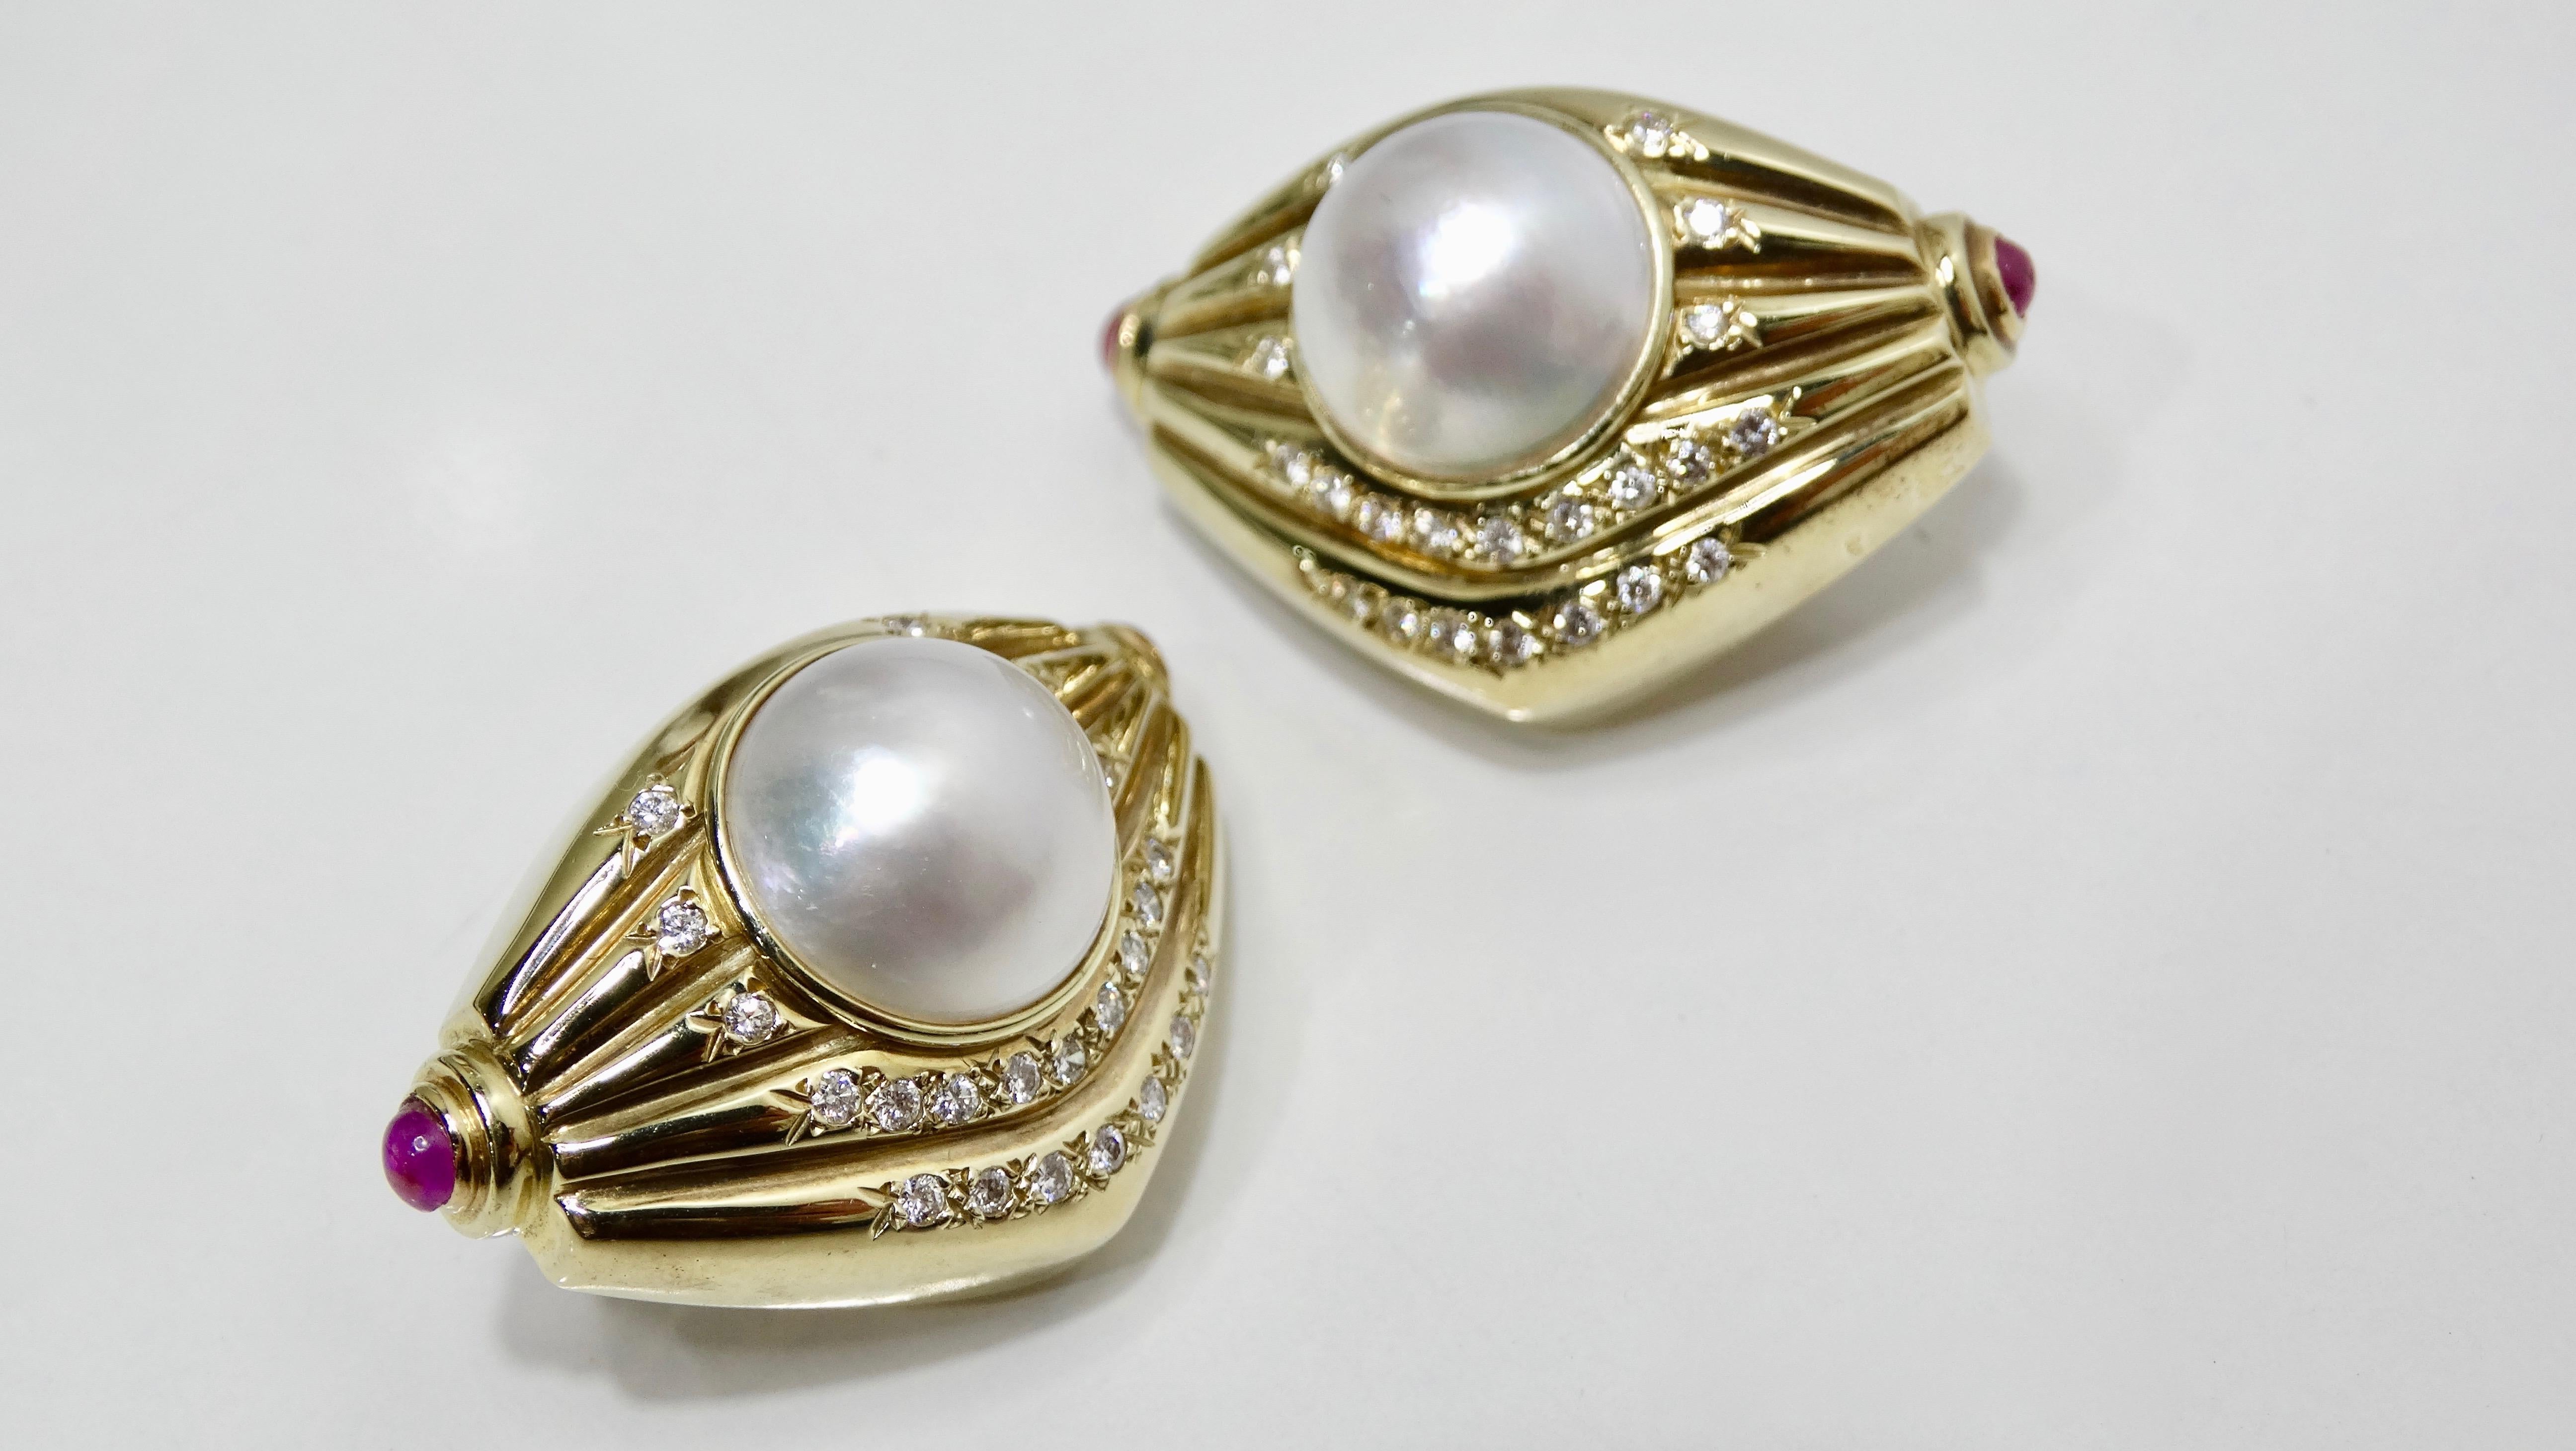 Vervollständigen Sie Ihren Look mit diesen atemberaubenden Ohrringen! Circa 1970er Jahre, diese gerippten geometrischen Ohrringe sind 14k Gold und mit einer großen natürlichen Perle besetzt. Merkmale Cabochon geschliffene rosa Saphire sind an beiden